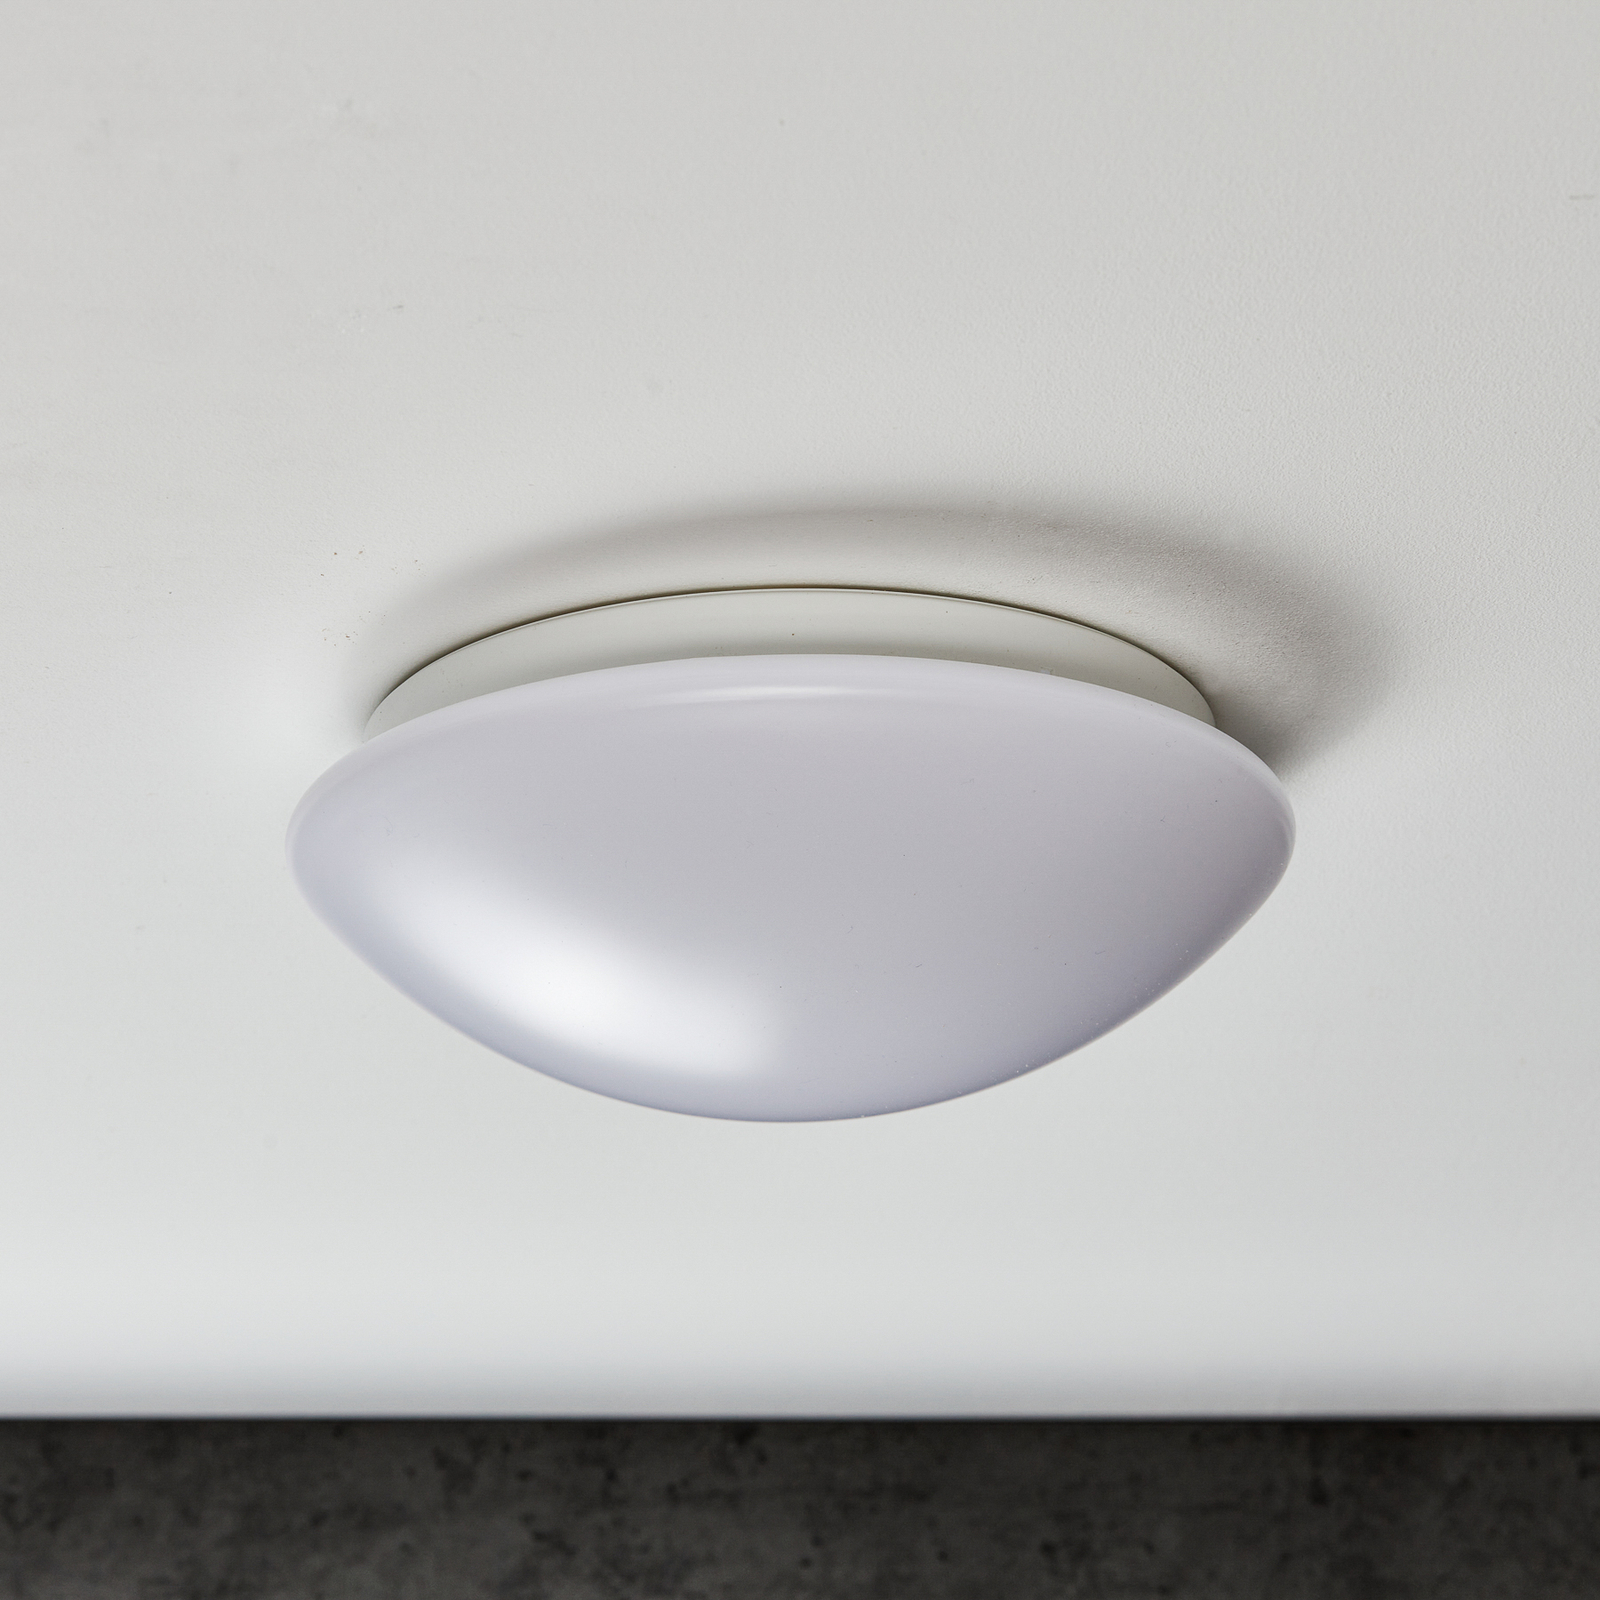 STEINEL 16 S LED plafondlamp sensor | Lampen24.be